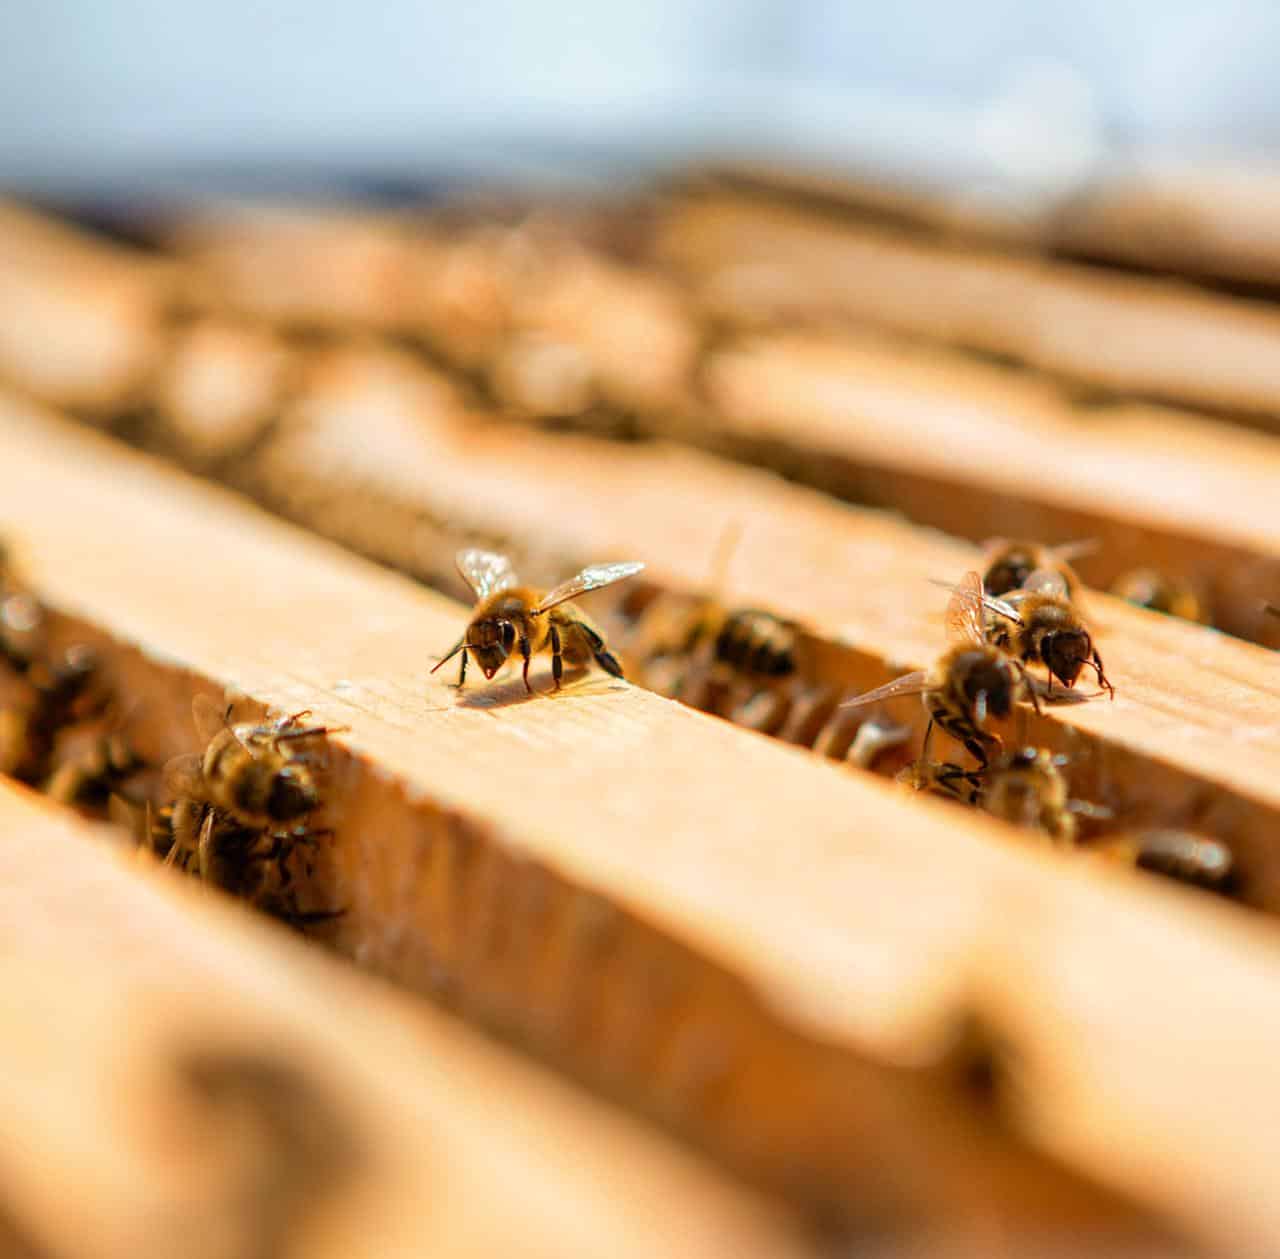 في اليوم العالمي للمحل جيرلان تؤكد وتظهر المزيد من الالتزام في الحفاظ على النحل